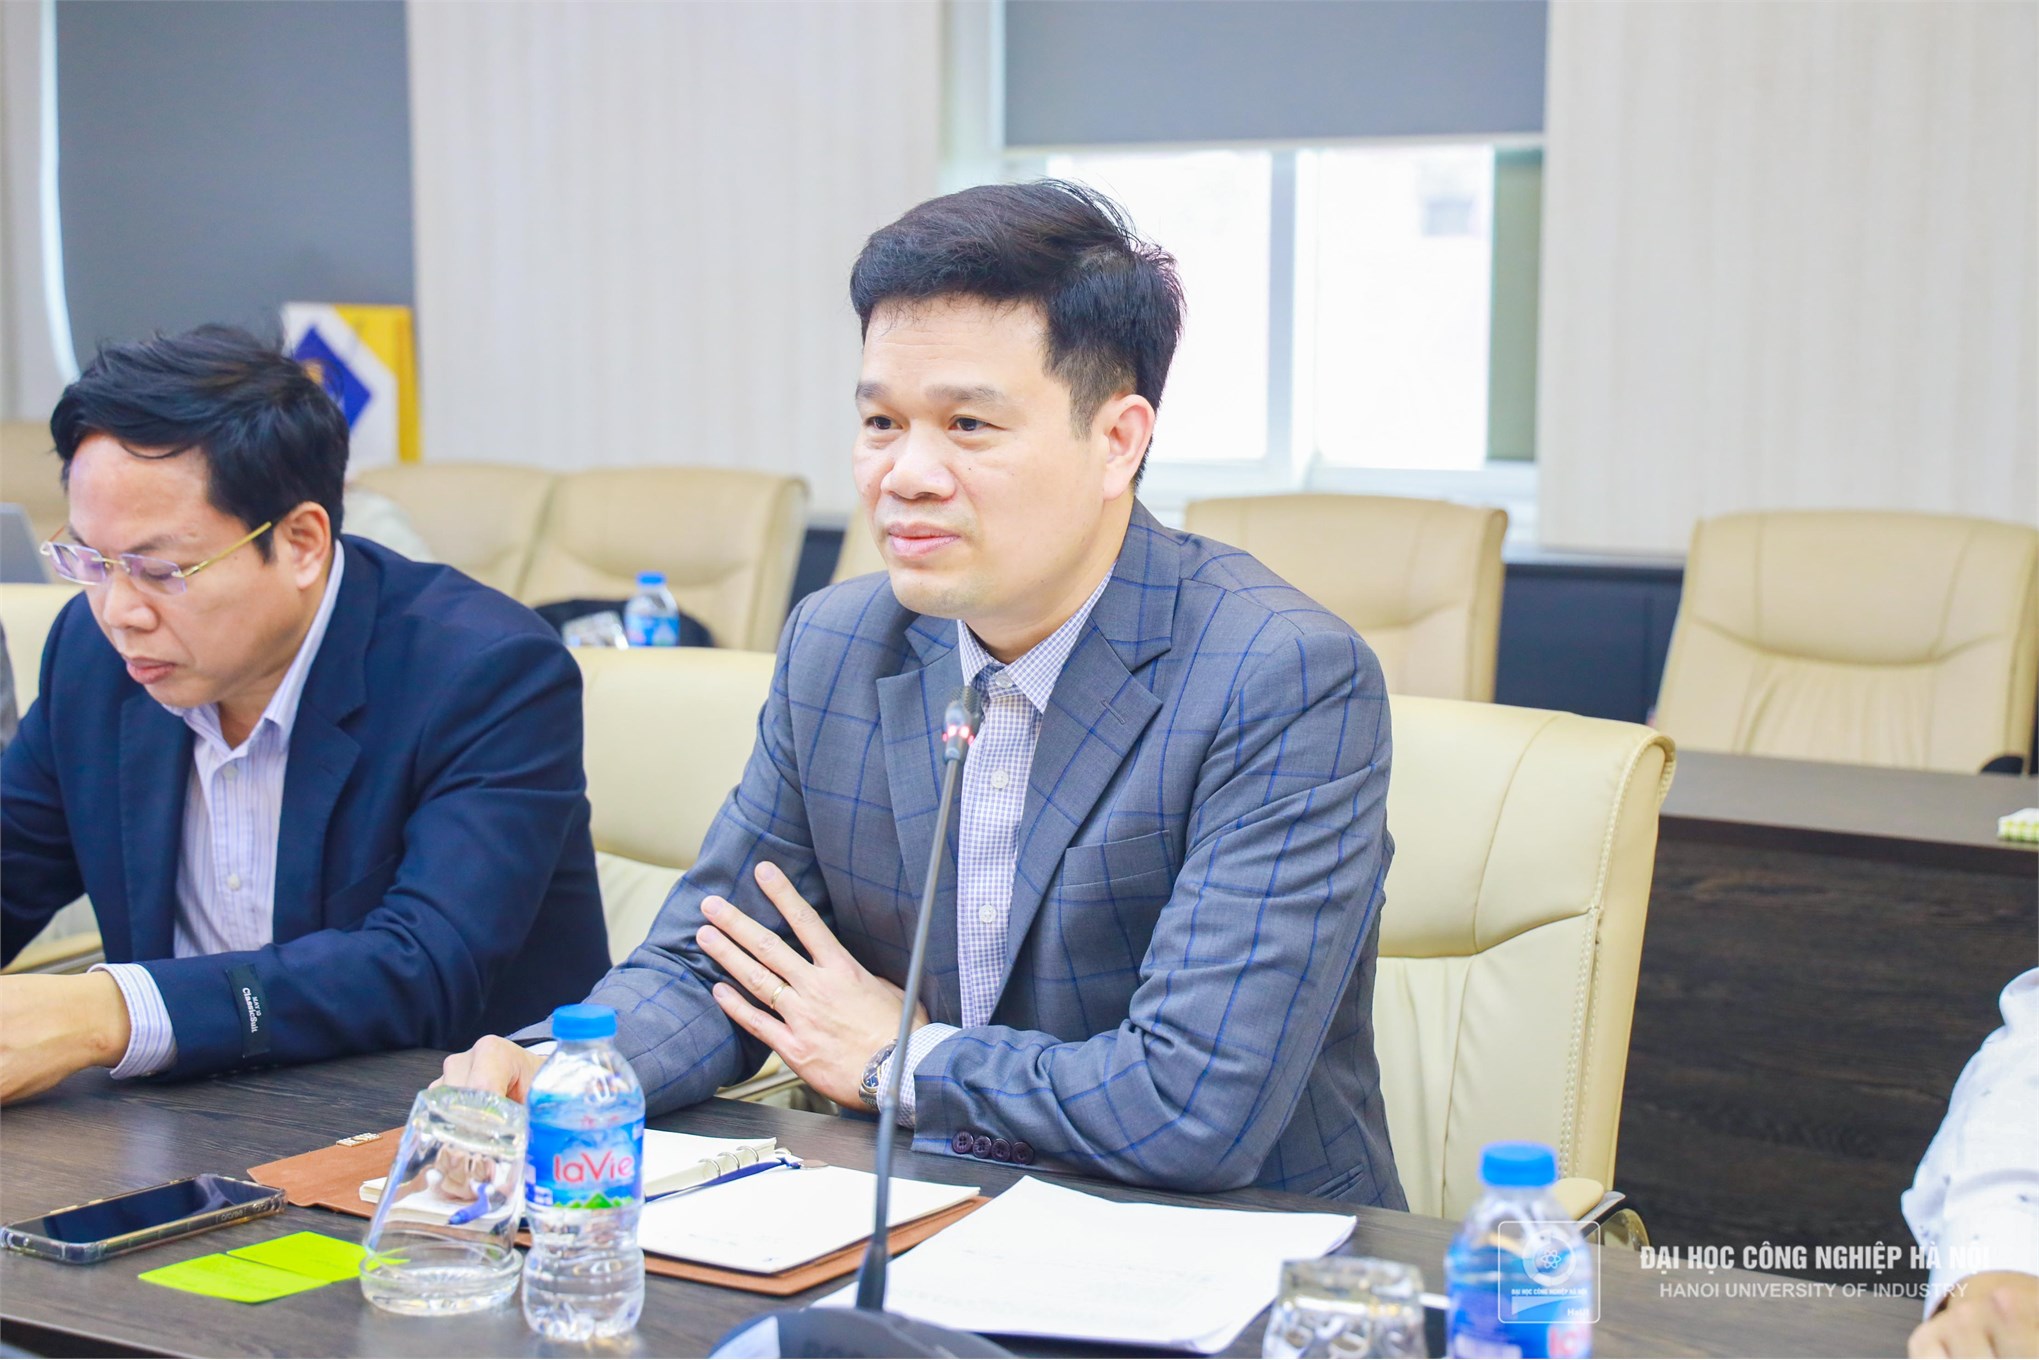 Làm việc với Công ty TNHH Arcadyan Technology Việt Nam, đẩy mạnh hợp tác giữa Nhà trường và Doanh nghiệp